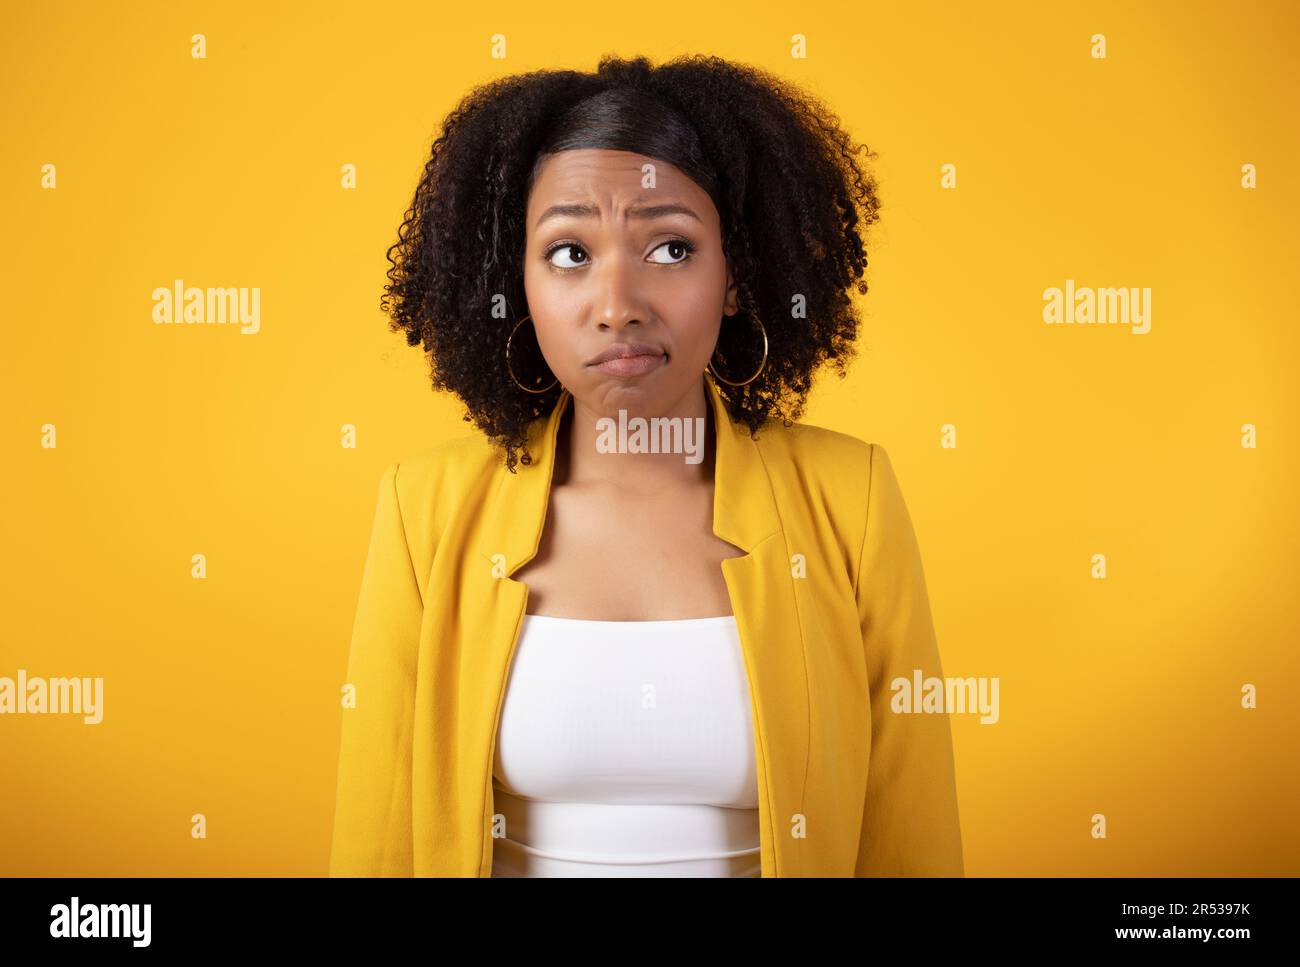 Jeune femme noire triste et attentionnés, regardant de côté sur fond jaune, imaginant quelque chose, se sentant douteuse ou contrariée Banque D'Images